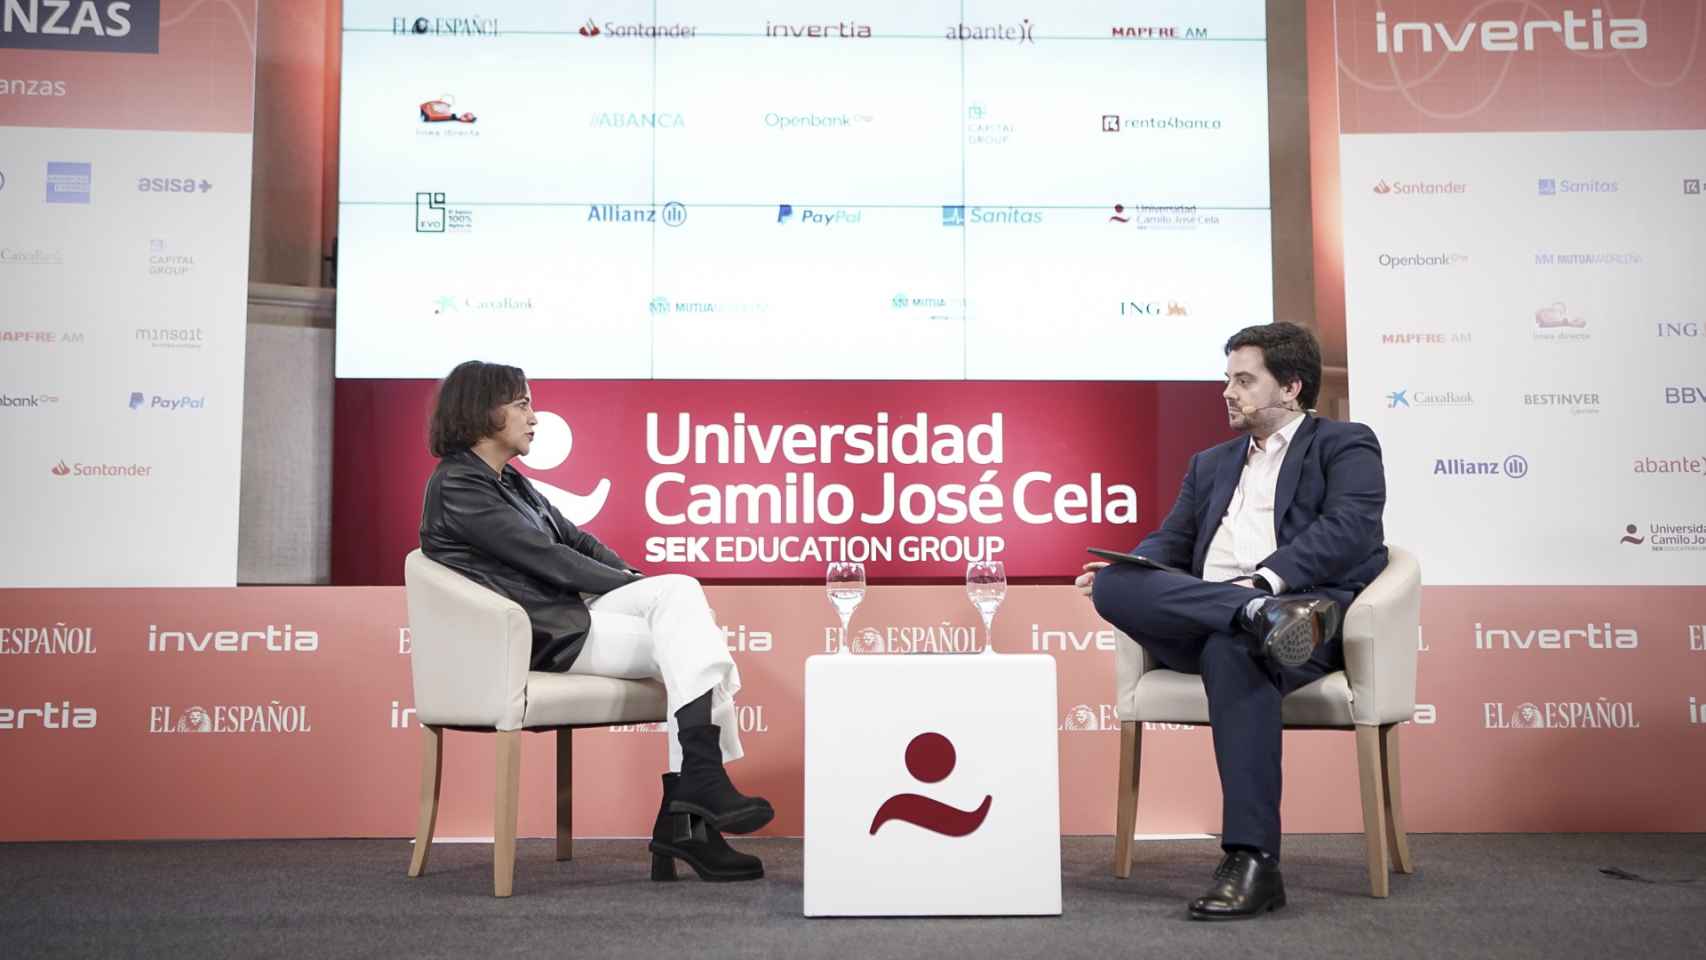 Almudena Román, directora general de Banca para Particulares de ING España, durante su conversación con Arturo Criado,  subdirector de EL ESPAÑOL-Invertia;